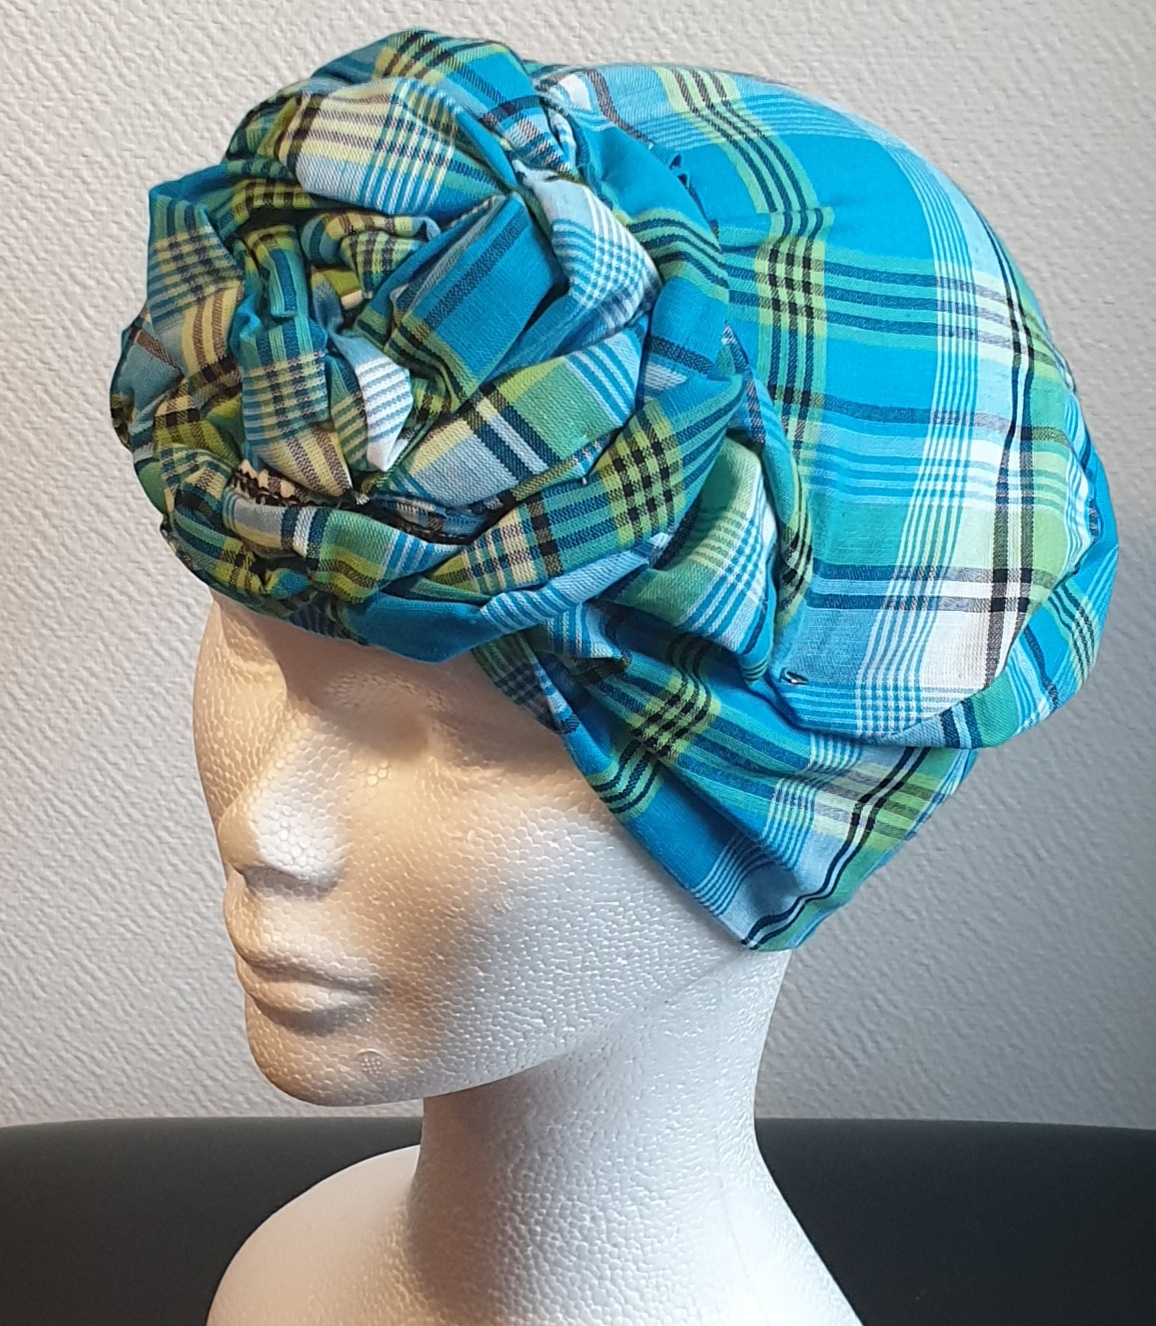 Chapeau turban pleine tête et réglable. Fleurs bleues cousues nouées et prêt à porter. Tissu Madras. Création artisanale ANJERO. Fabriqué en France.